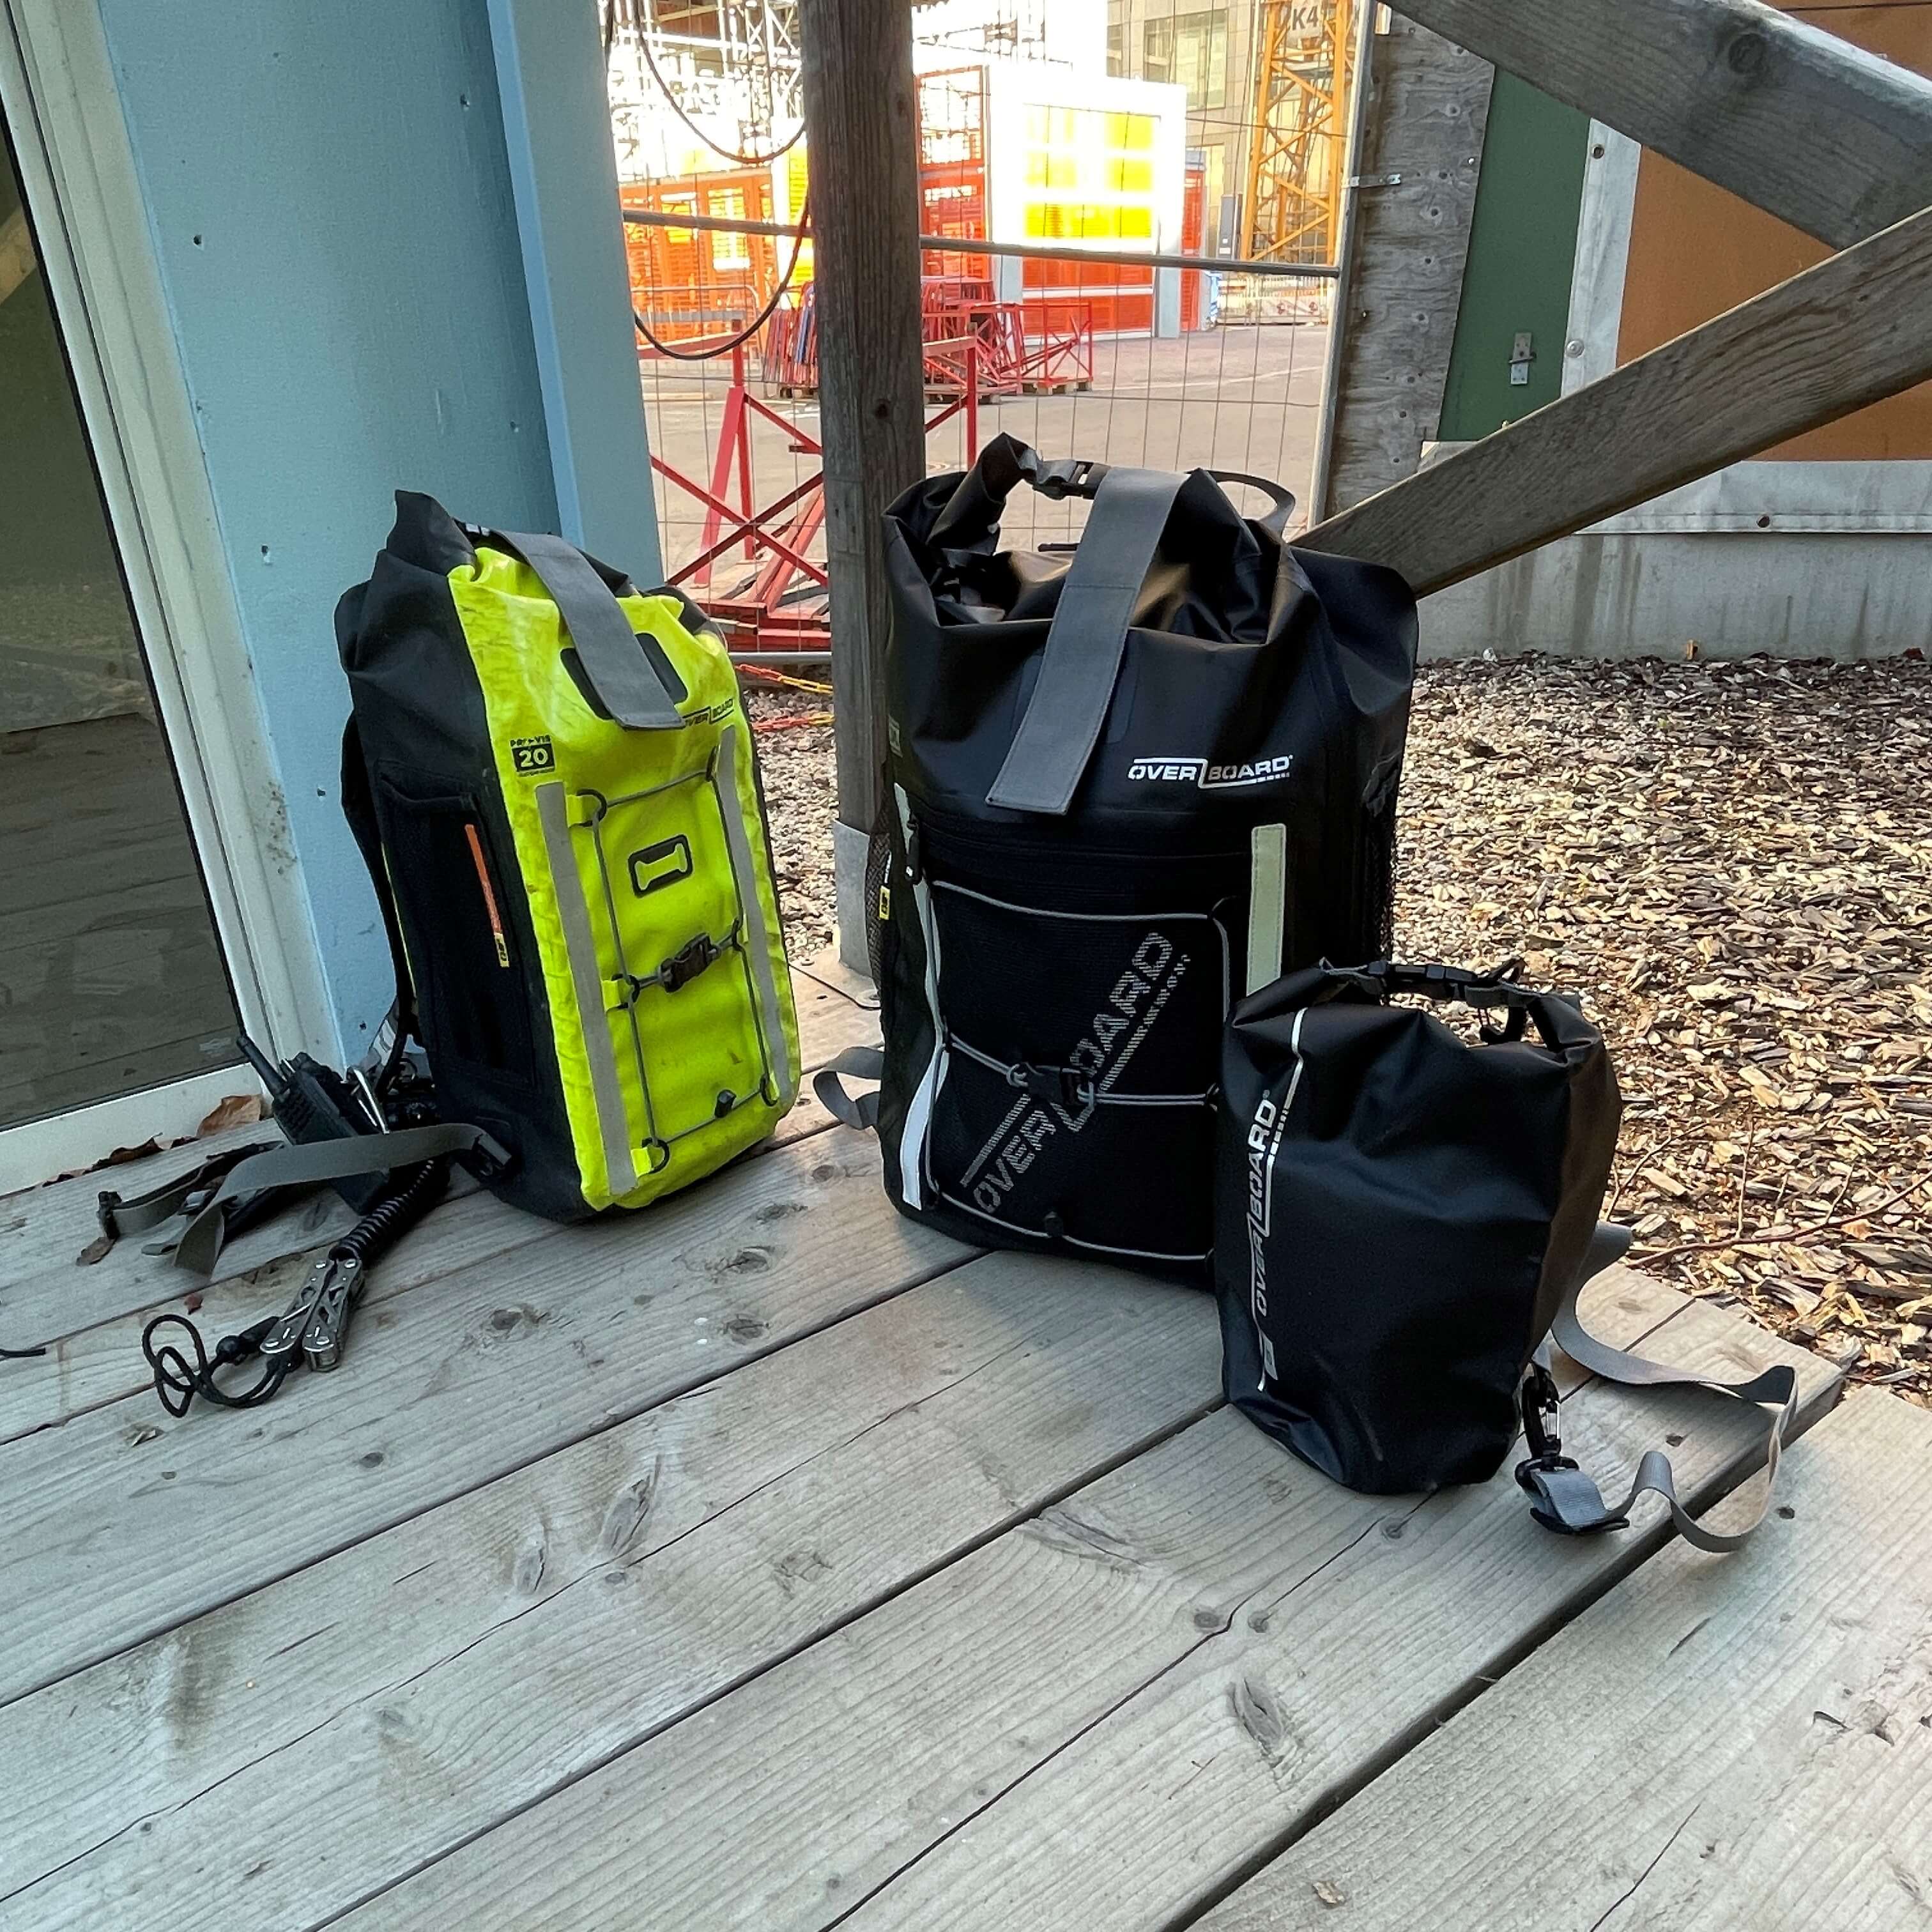 Waterproof Overboard Bags & Backpack at Skanska Construction site